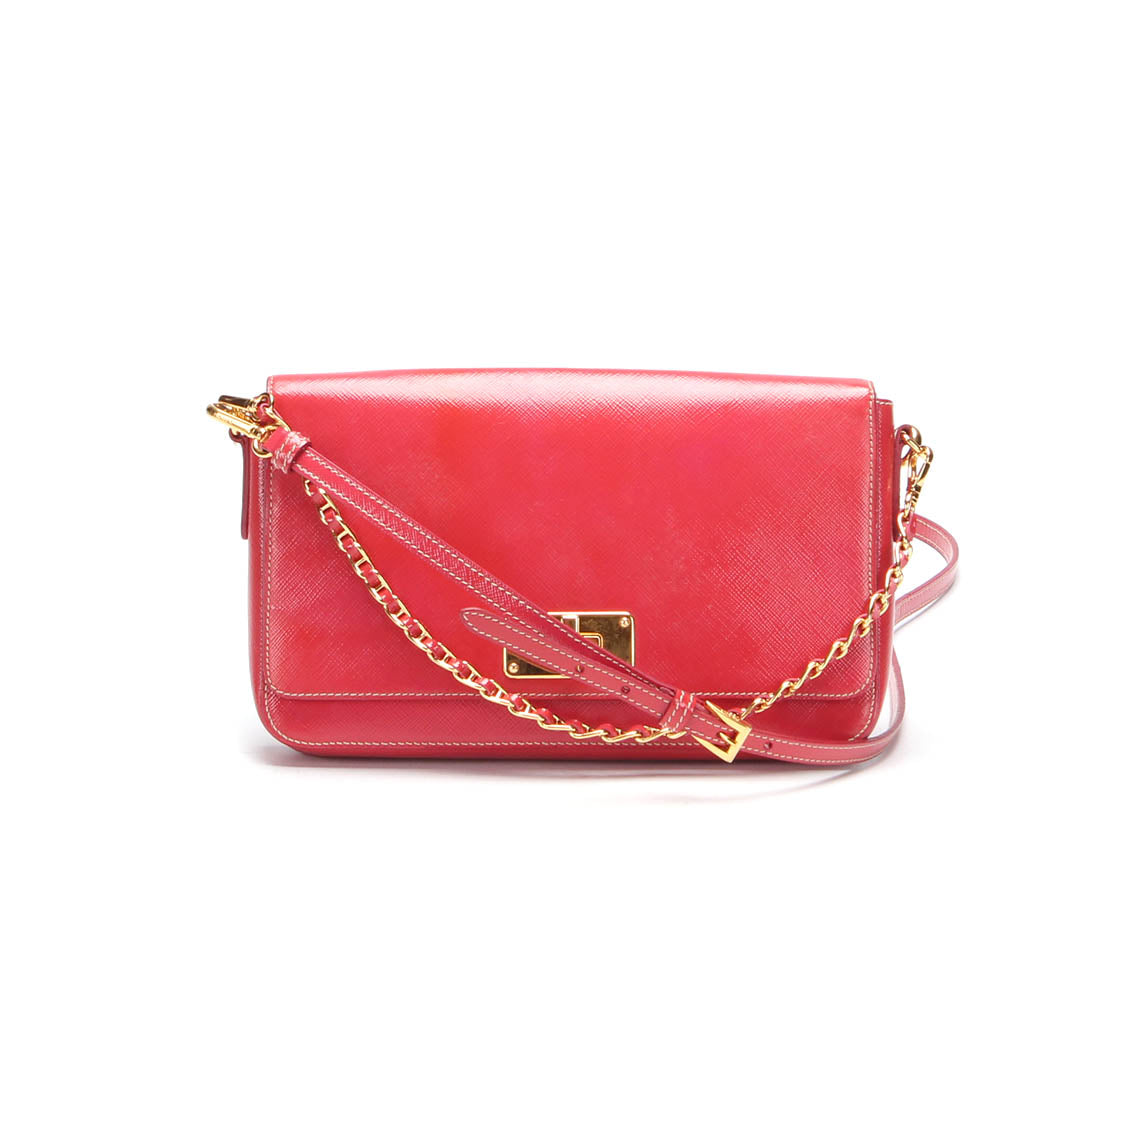 Saffiano Leather Vernice Flap Bag